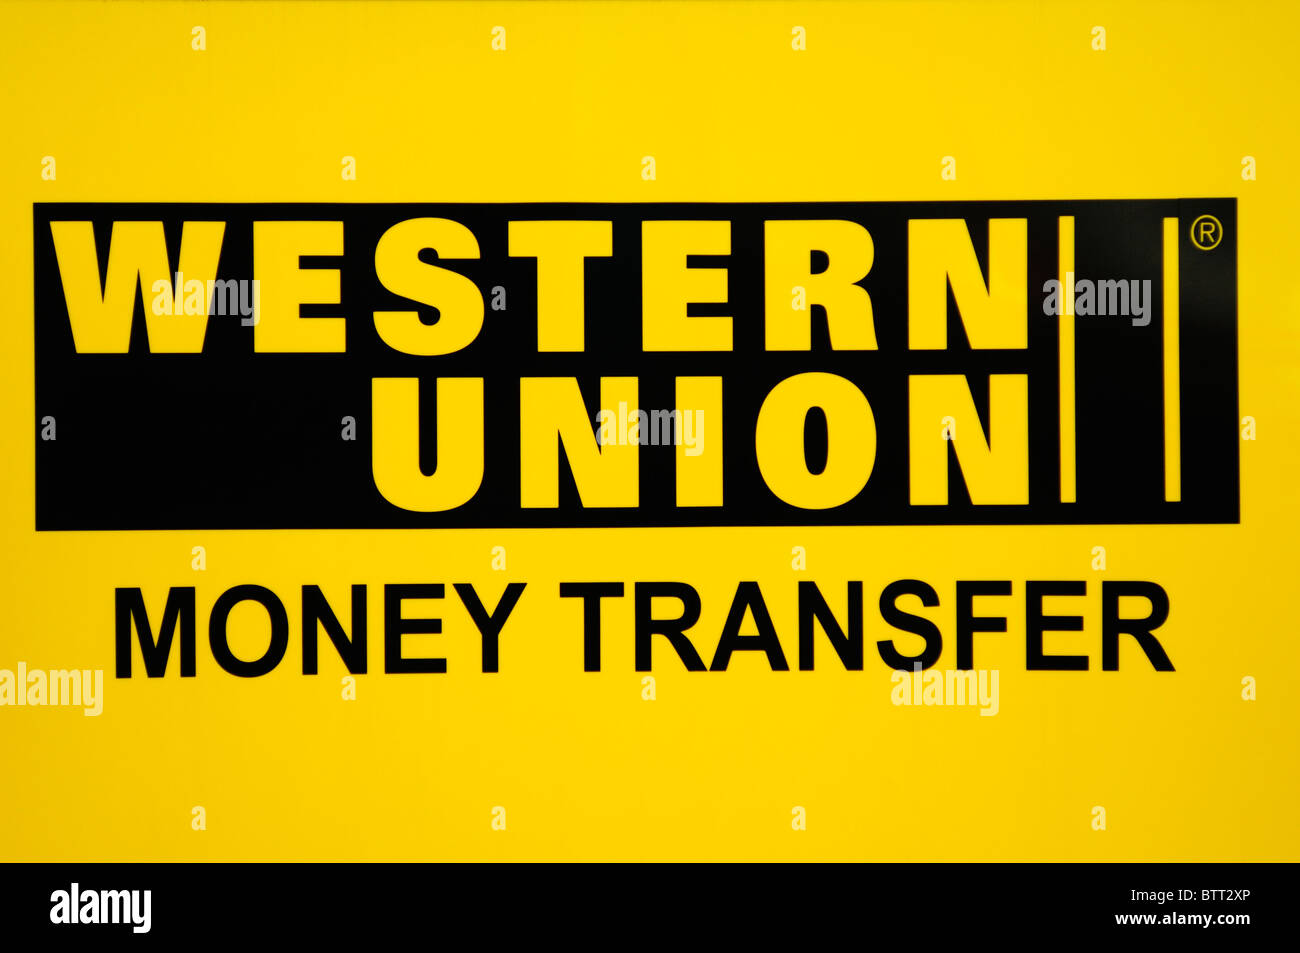 Western Union Transfert d'argent inscription logo, London, England, UK Banque D'Images